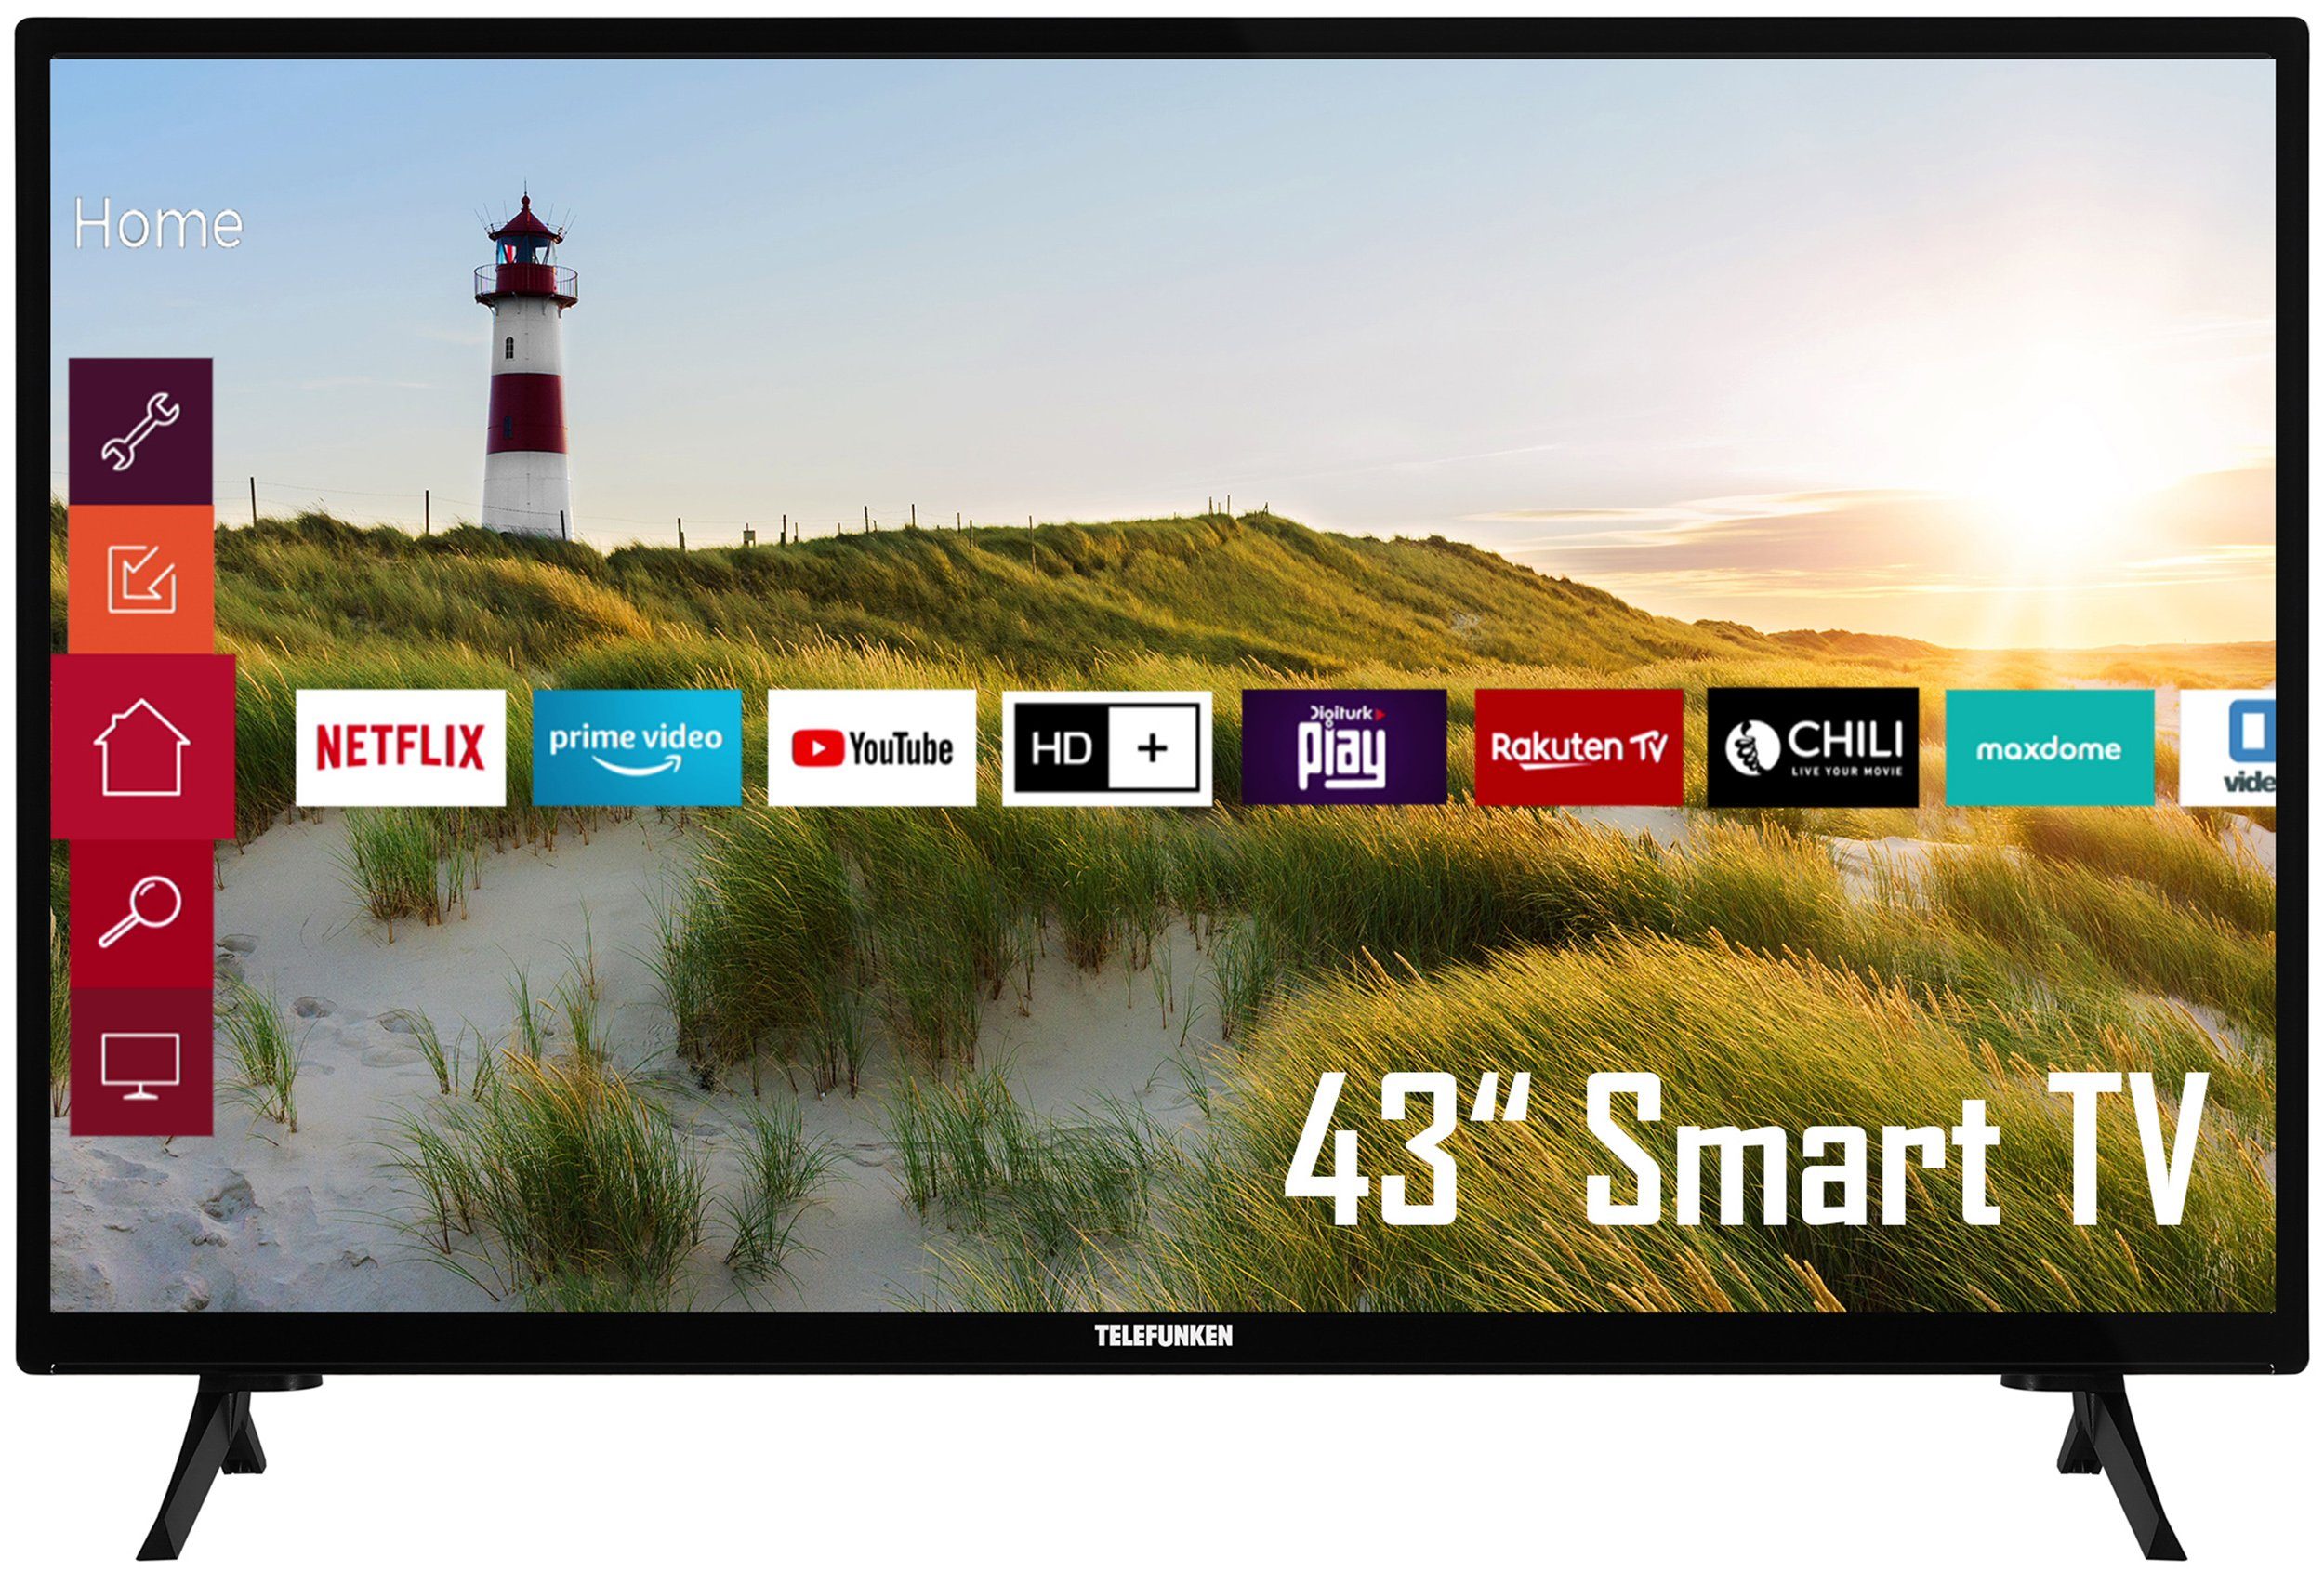 Telefunken XF43K550 LCD-LED Fernseher (108 cm/43 Zoll, Full HD, Smart TV, Triple-Tuner, HDR, 6 Monate HD+ gratis)